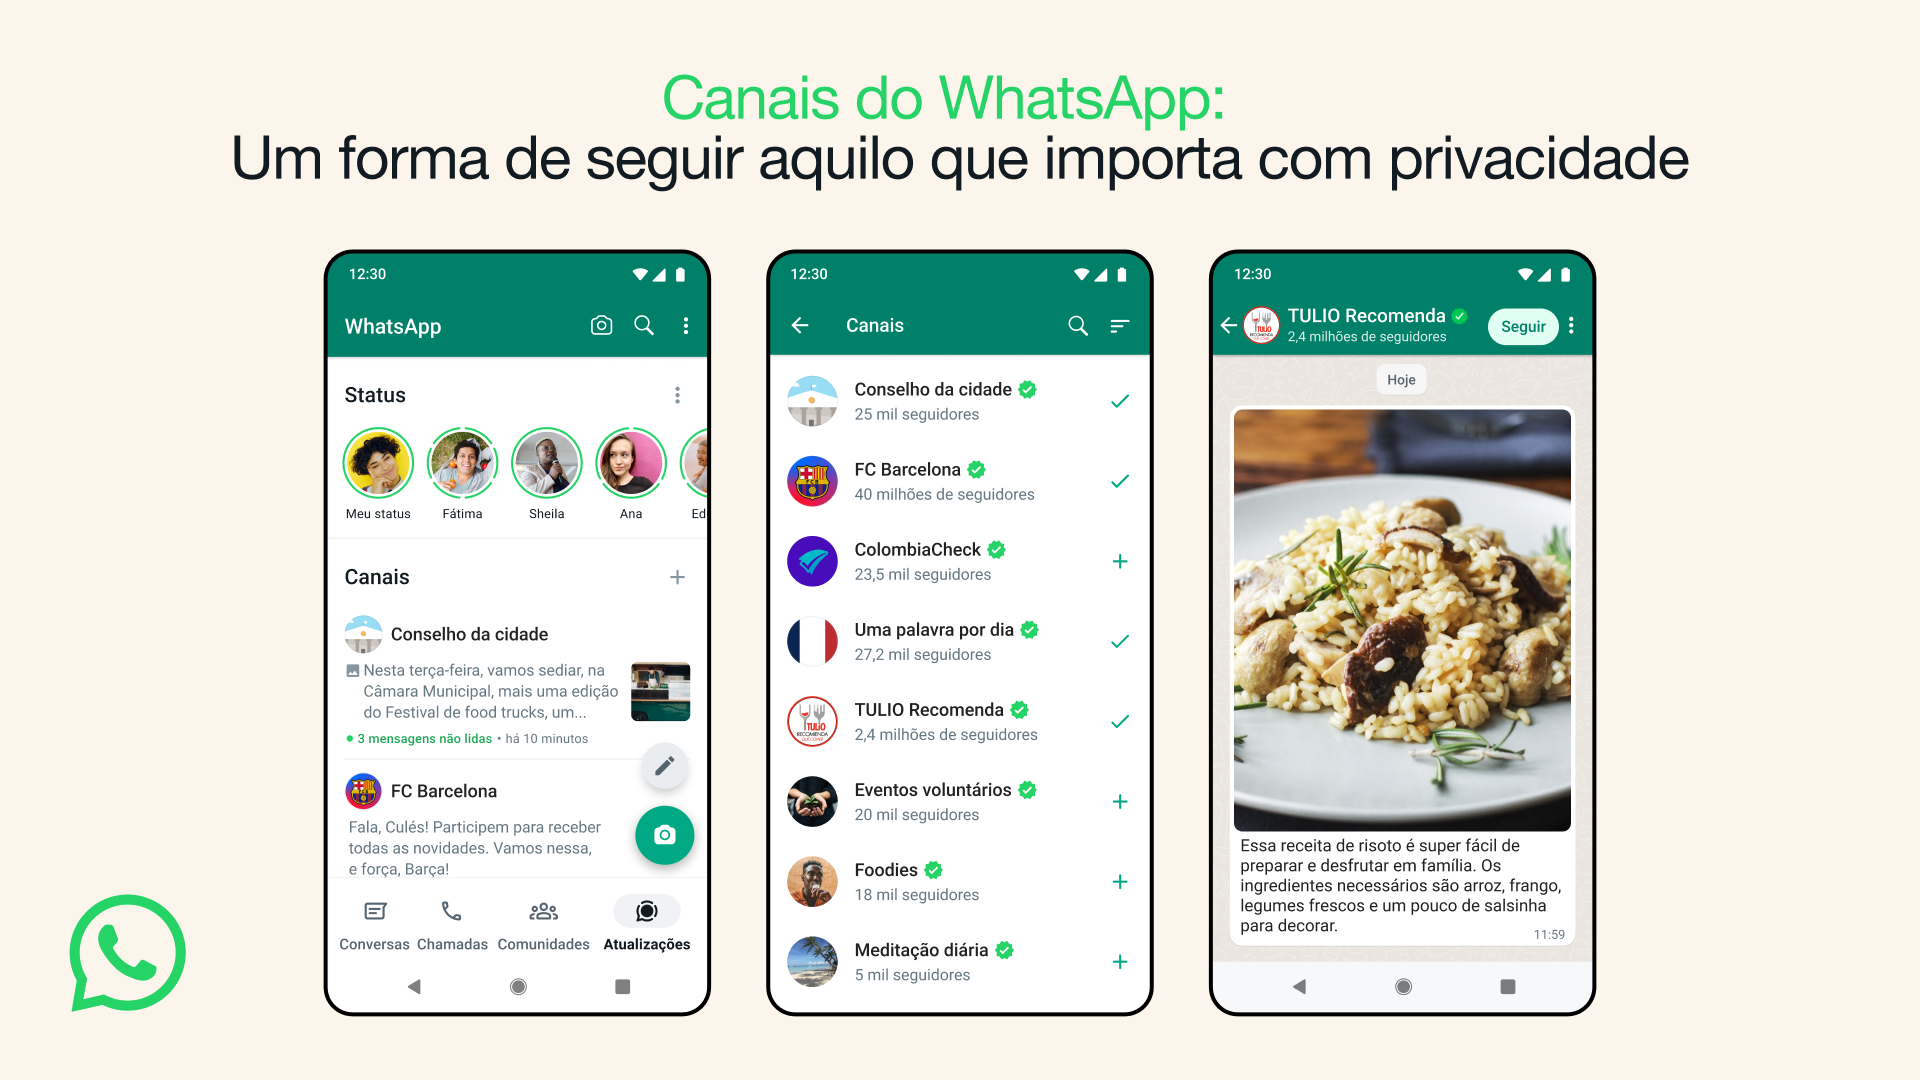 Canais do WhatsApp: Quais as Oportunidades para Marcas e Creators?